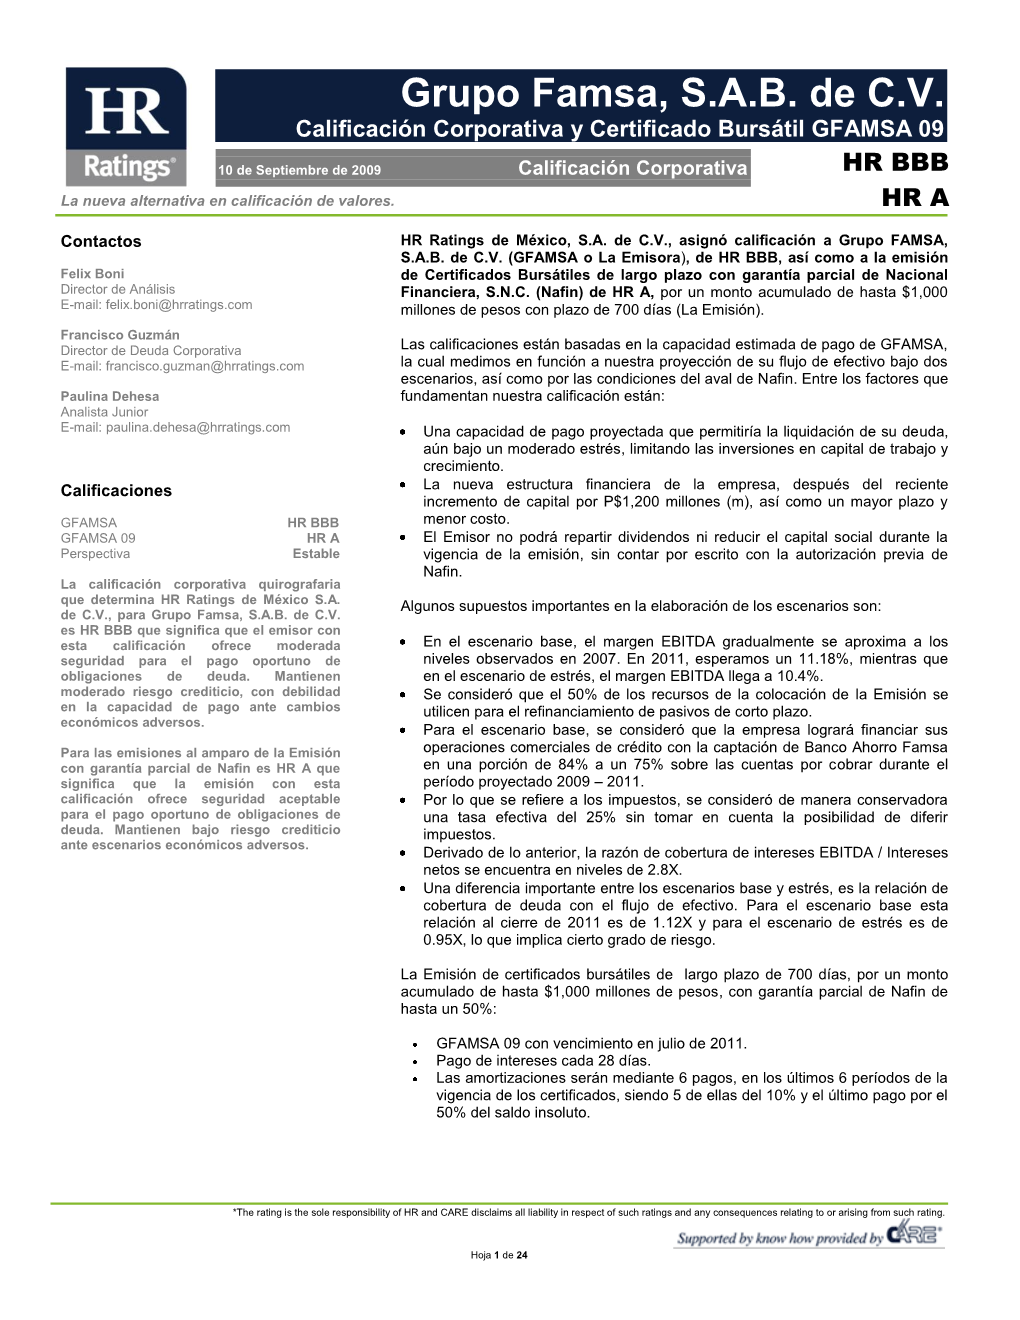 Grupo Famsa, S.A.B. De C.V. Calificación Corporativa Y Certificado Bursátil GFAMSA 09